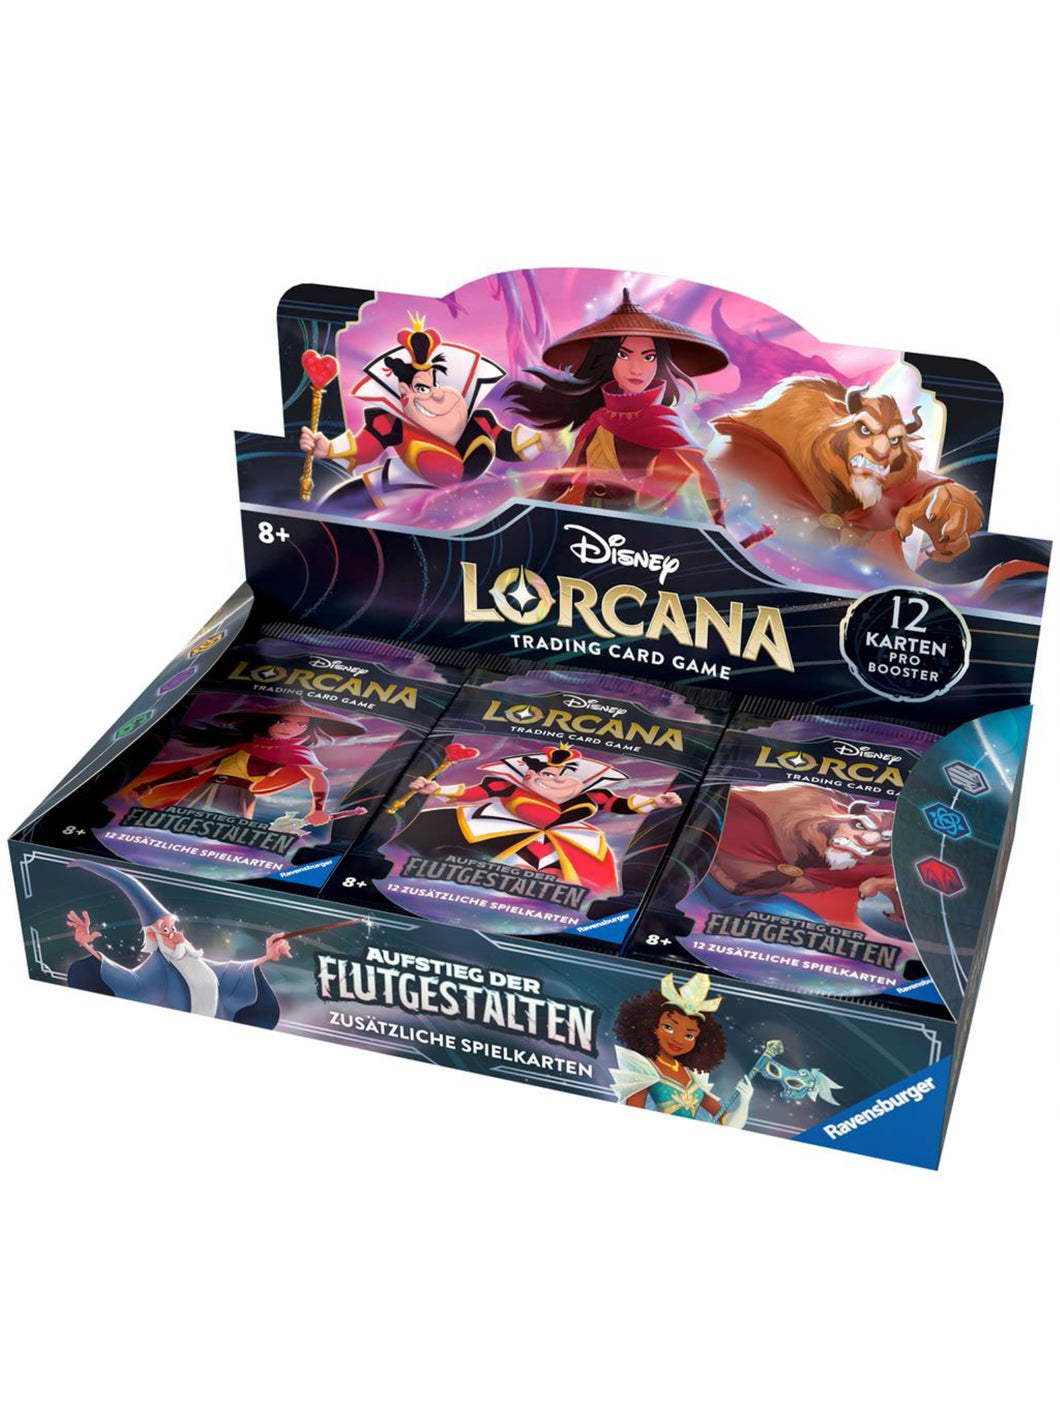 Disney Lorcana: Aufstieg der Flutgestalten Booster Display mit 24 Booster Packs (Deutsch)